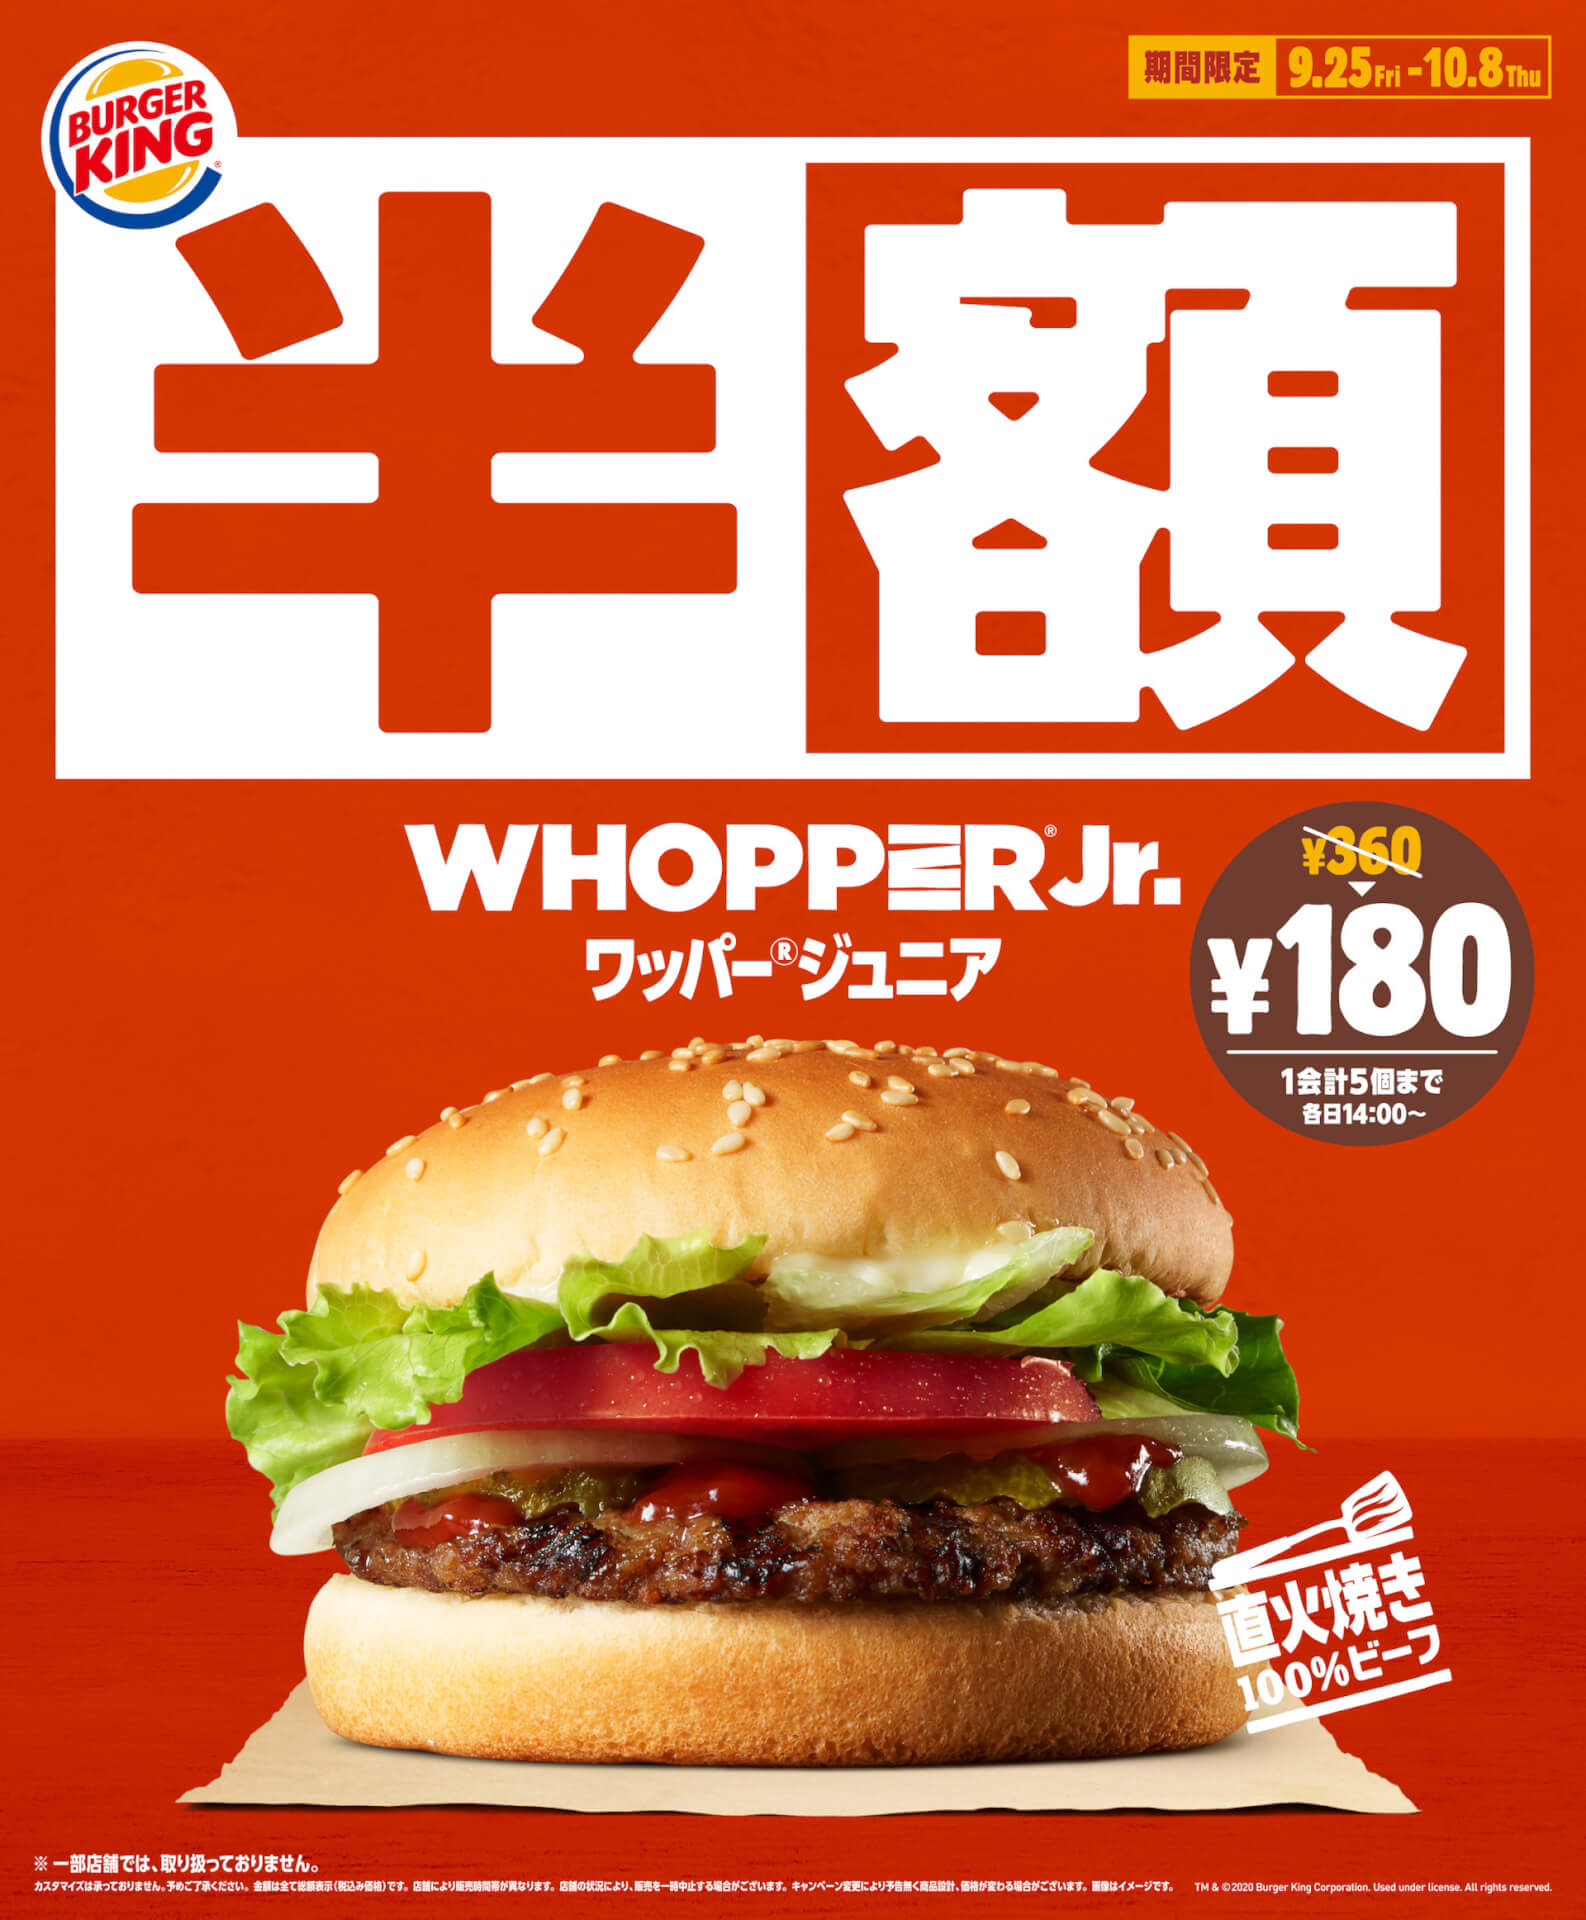 バーガーキングの人気メニュー「ワッパー（R）ジュニア」が期間限定で半額に！180円で販売決定 gourmet200924_burgerking_1